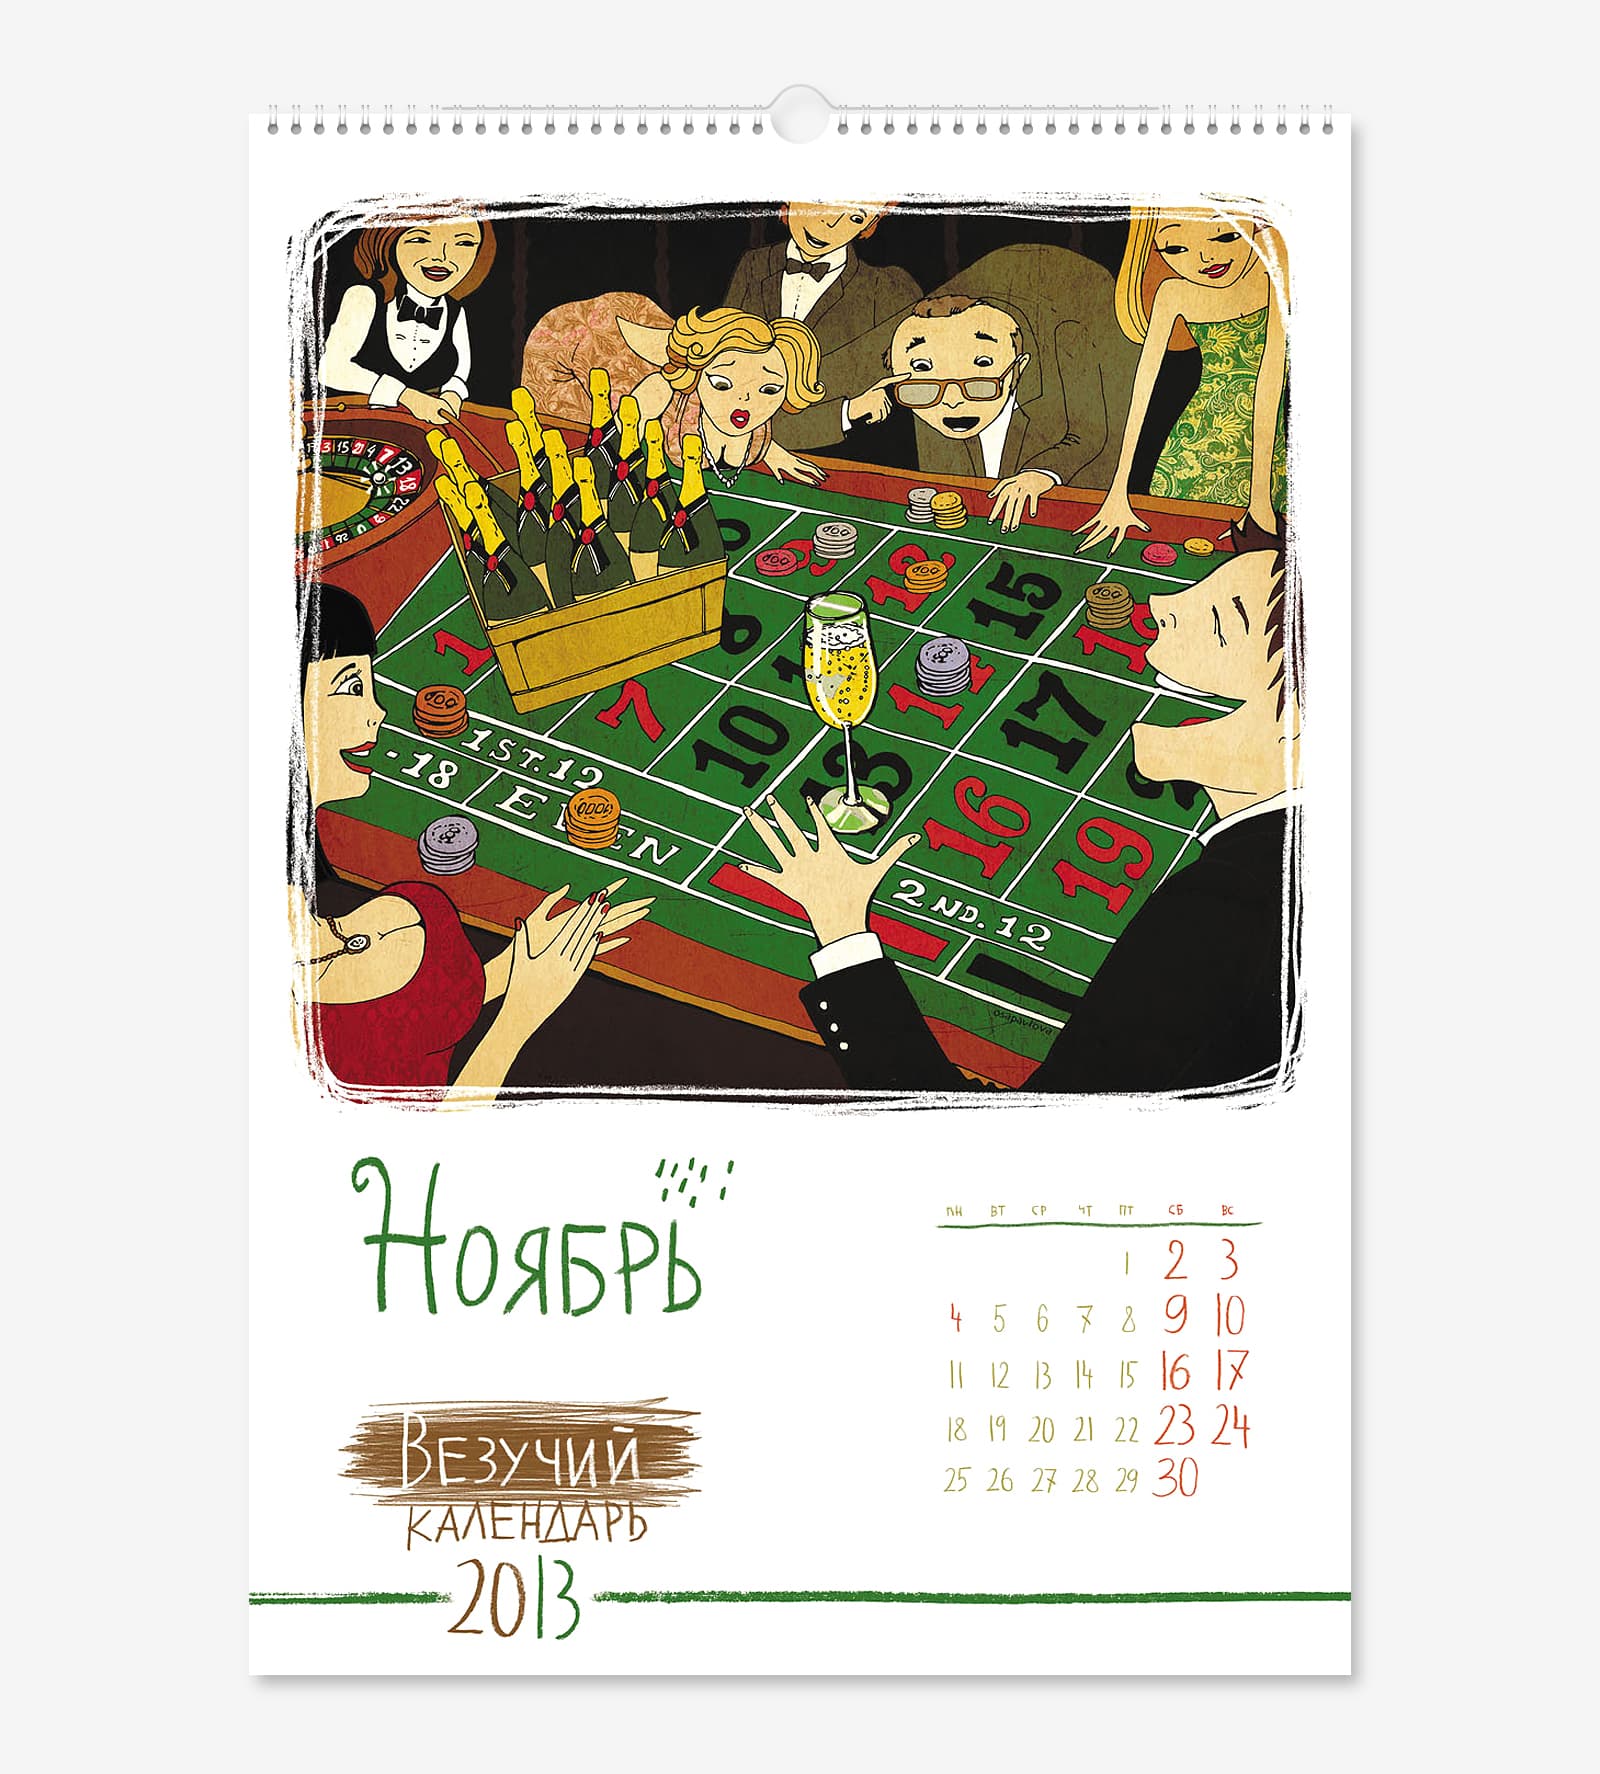 Счастливое число 13 в перекидном «Везучем календаре» А2 на 2013 год для частного инвестора